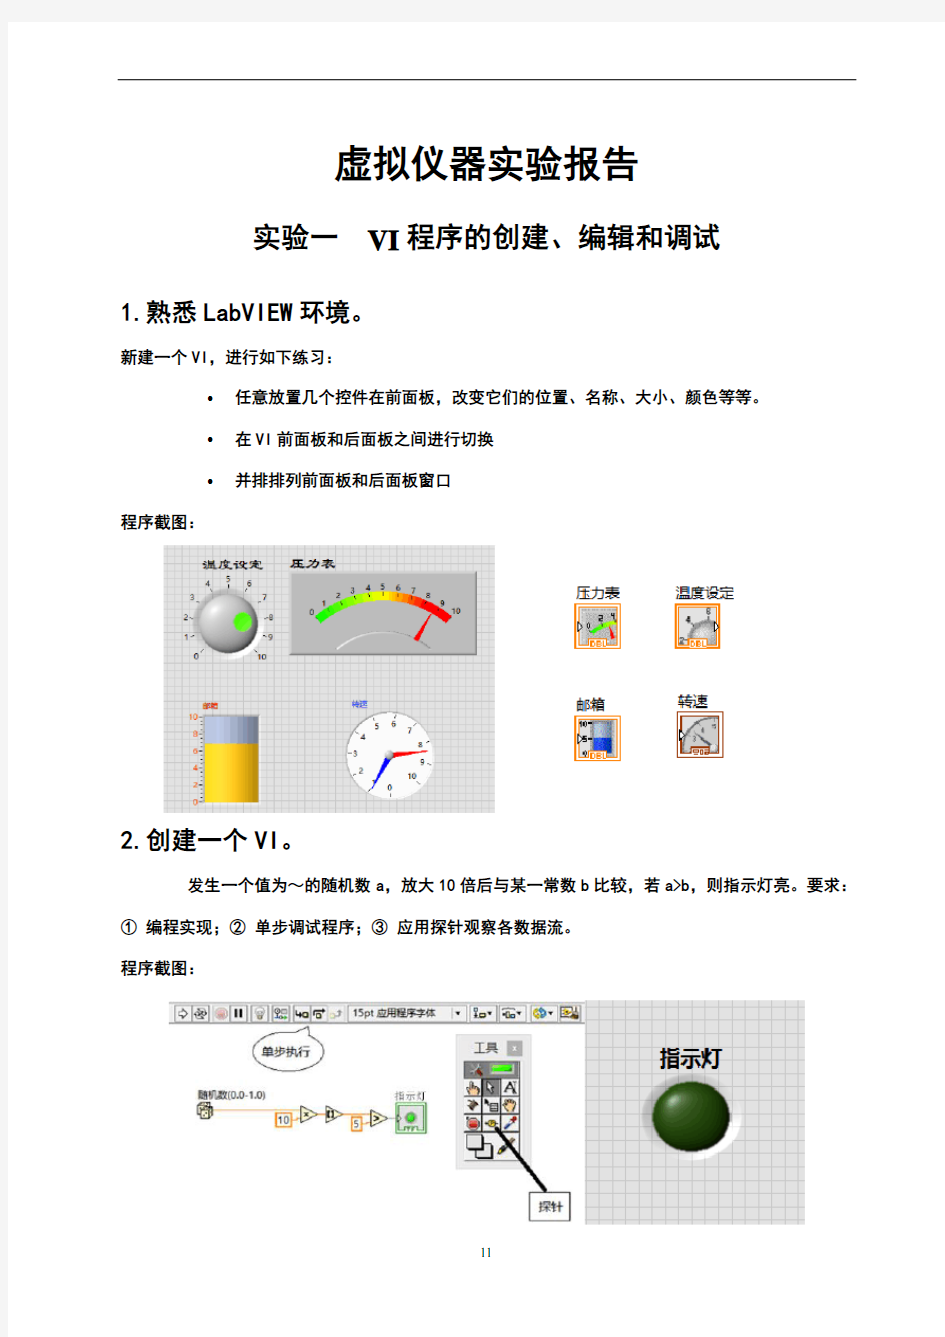 湖南大学测控技术与仪器《虚拟仪器》实验报告1-6